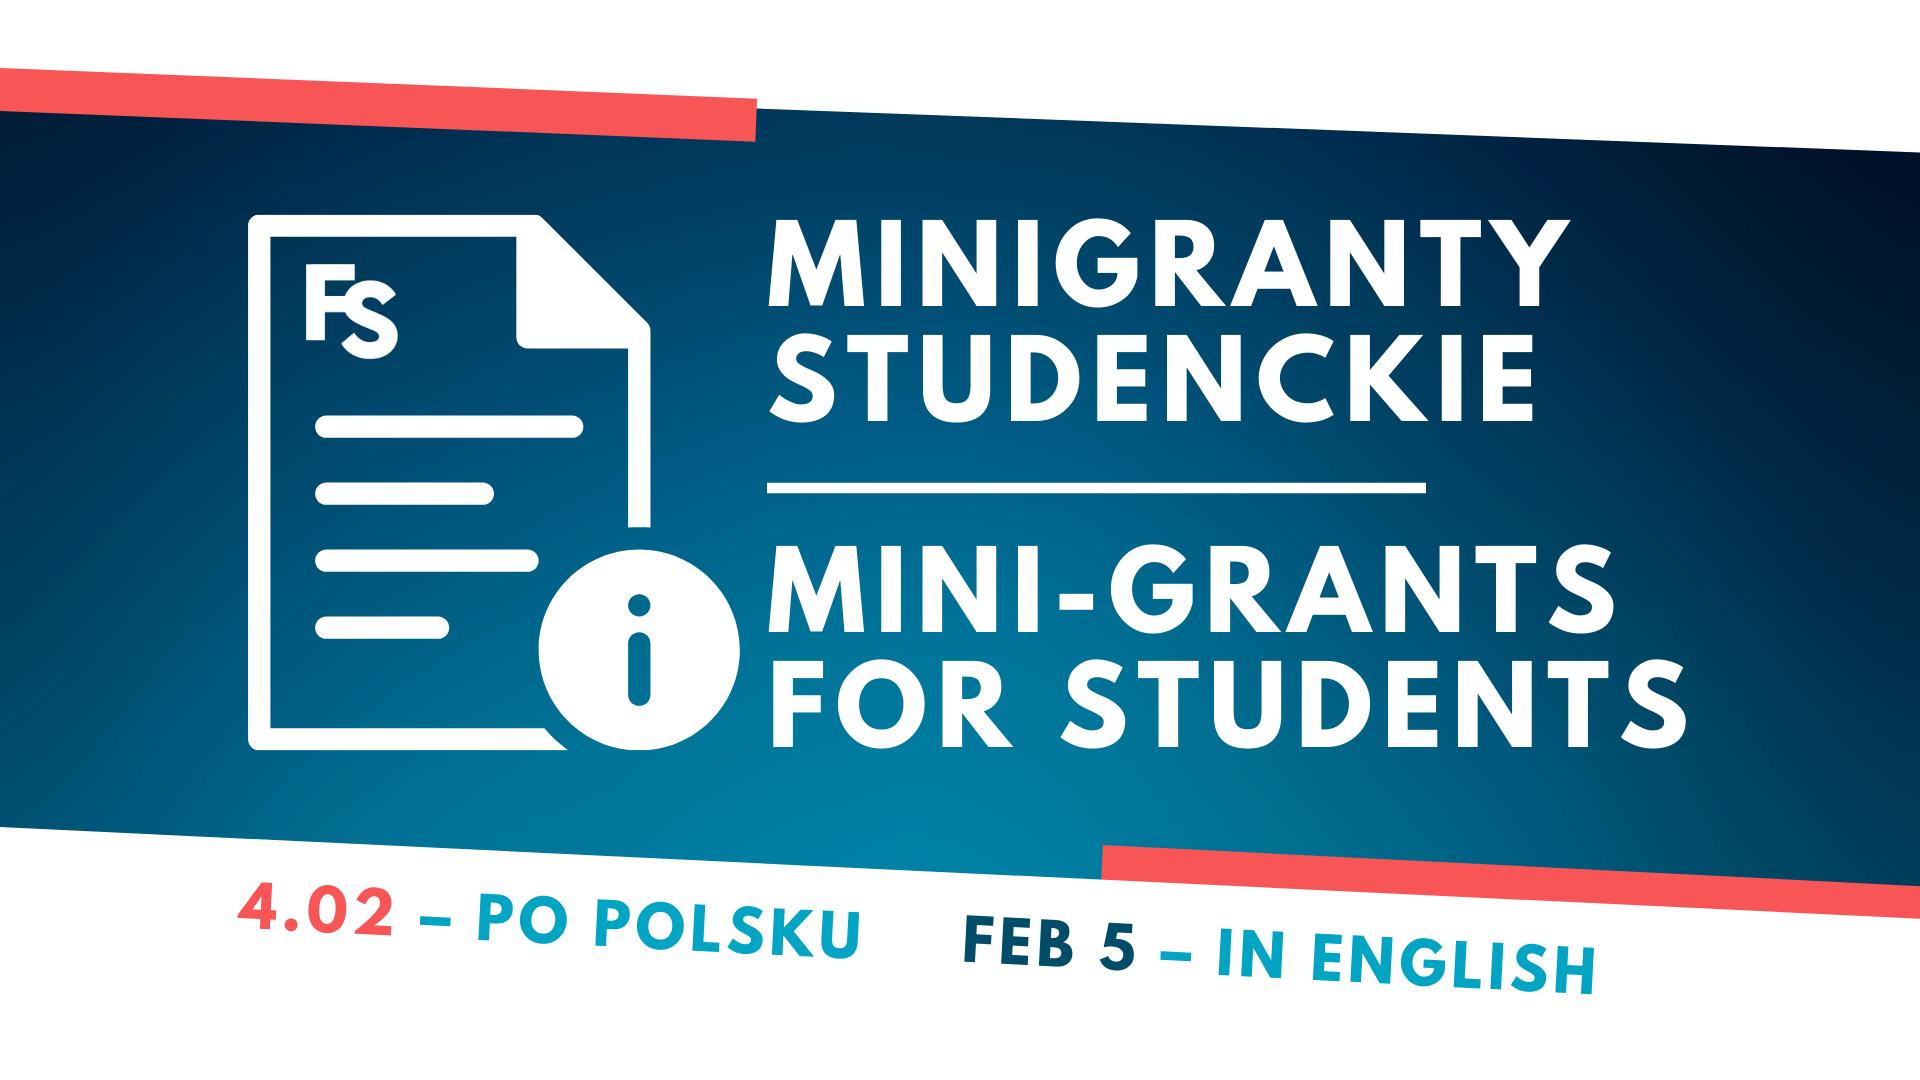 Grafika z napisem: Minigranty studenckie / Mini-Grants for students. 4.02 - po polsku, Feb 5 - in English